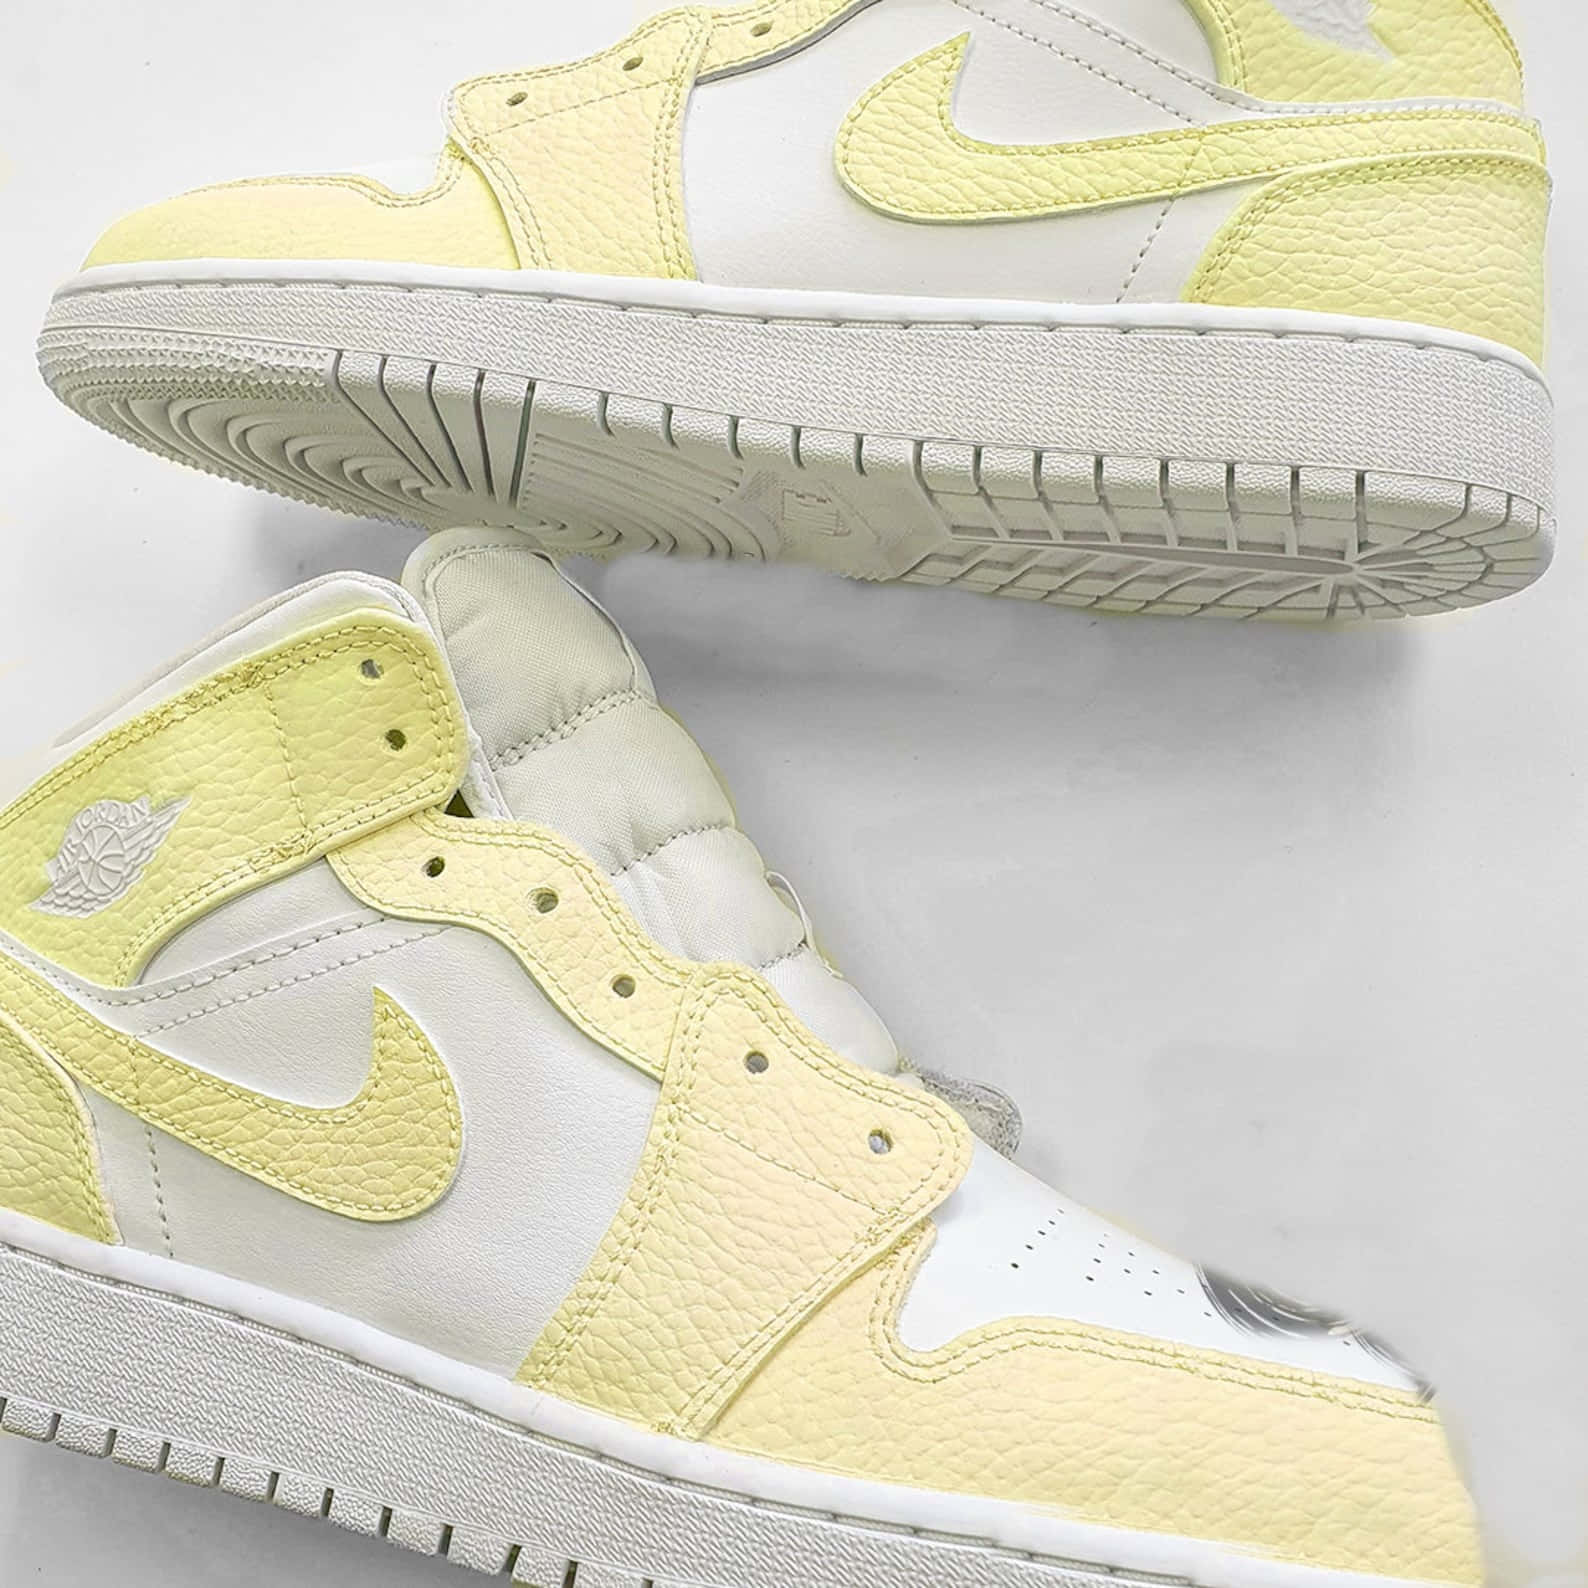 Vis din stil i de gule Jordan-sko med farver, som vil lysne enhver dag op. Wallpaper